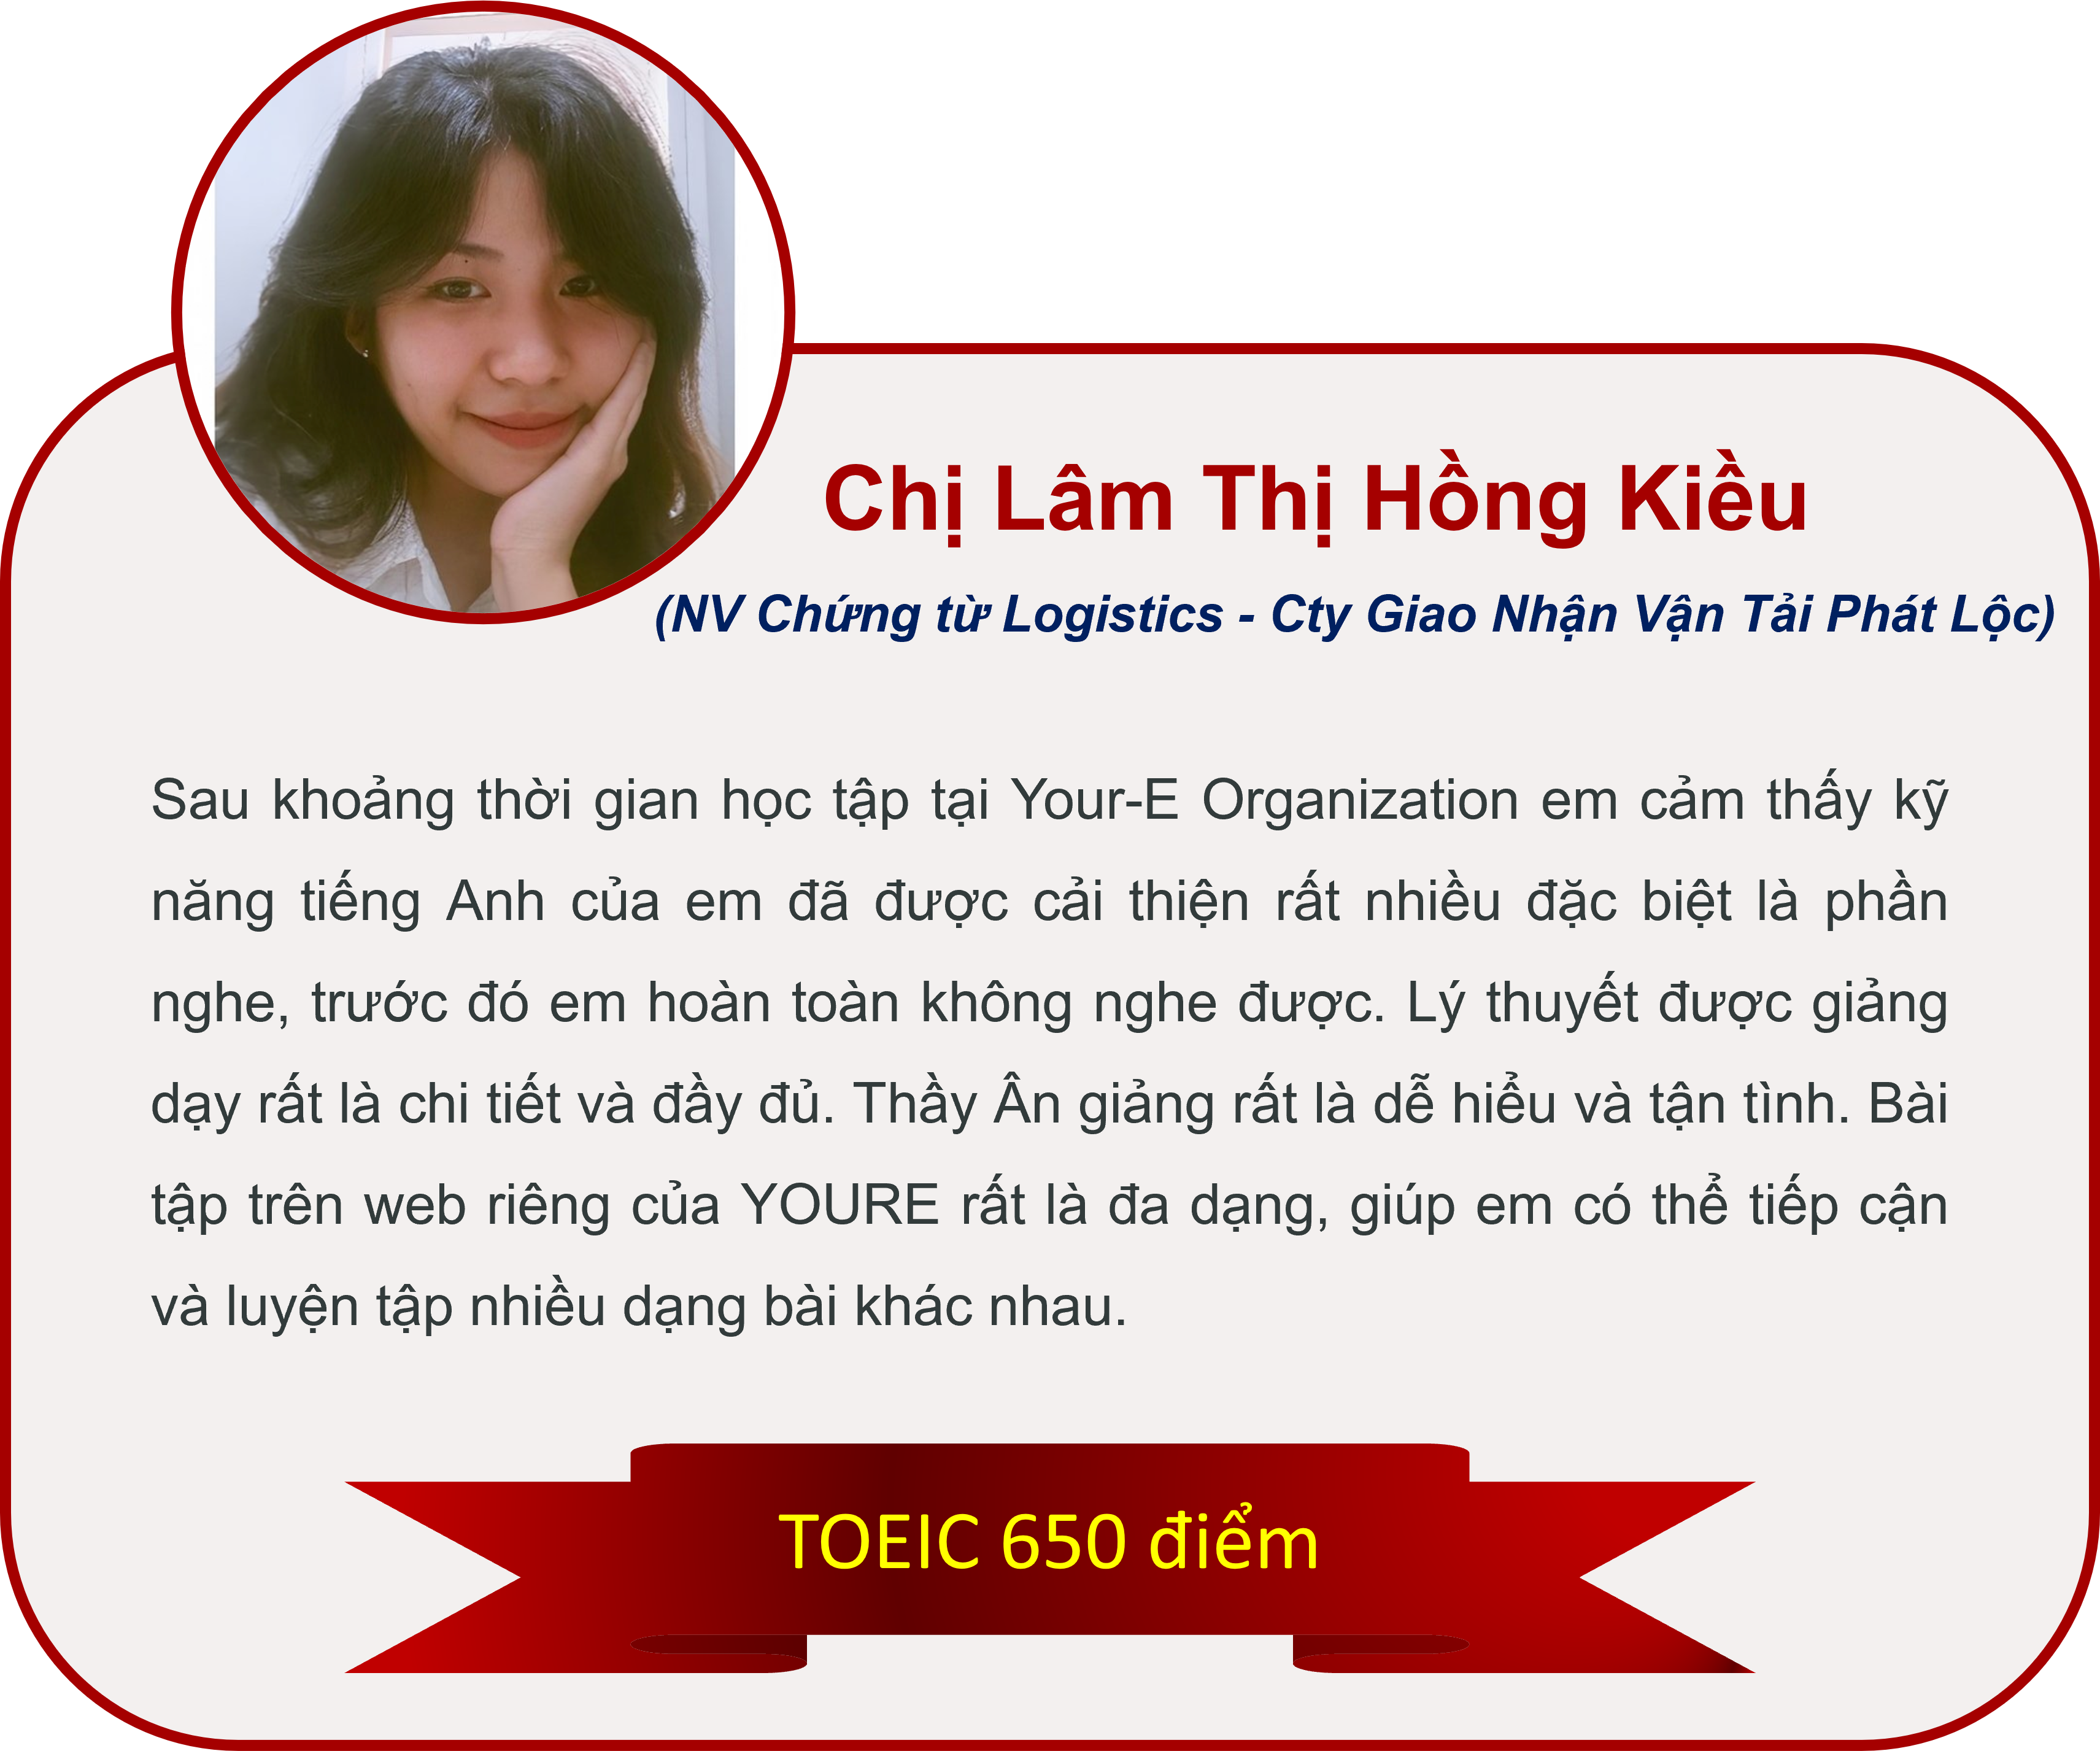 Lam Thi Hong Kieu hv TOEIC